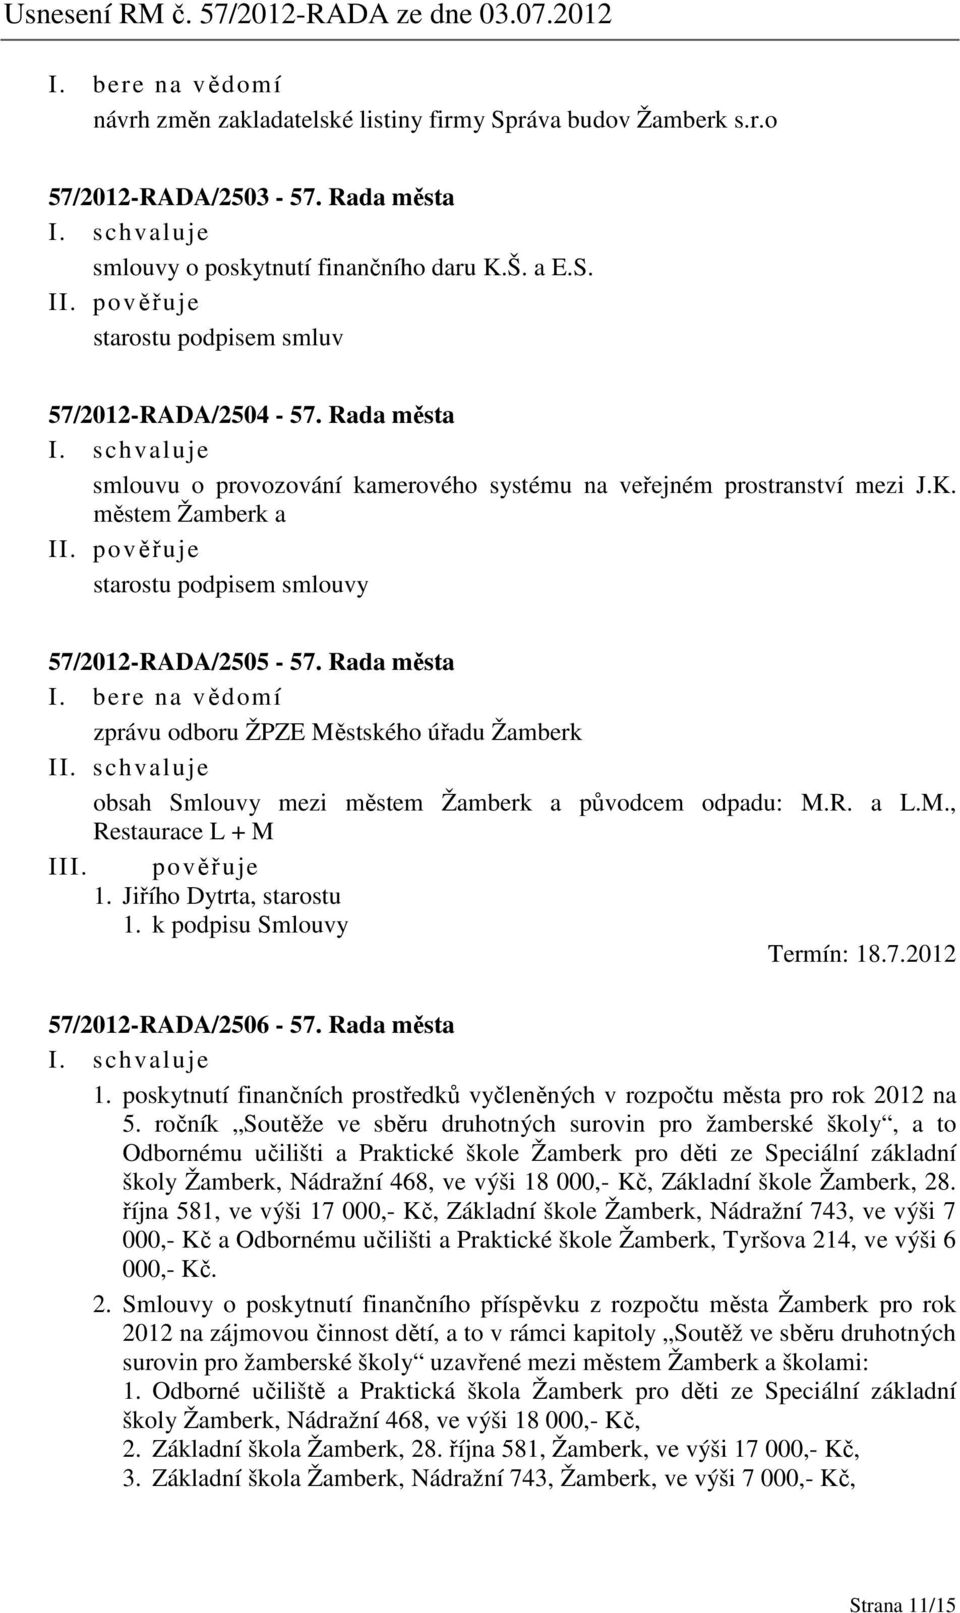 Rada města zprávu odboru ŽPZE Městského úřadu Žamberk I obsah Smlouvy mezi městem Žamberk a původcem odpadu: M.R. a L.M., Restaurace L + M I 1. k podpisu Smlouvy Termín: 18.7.